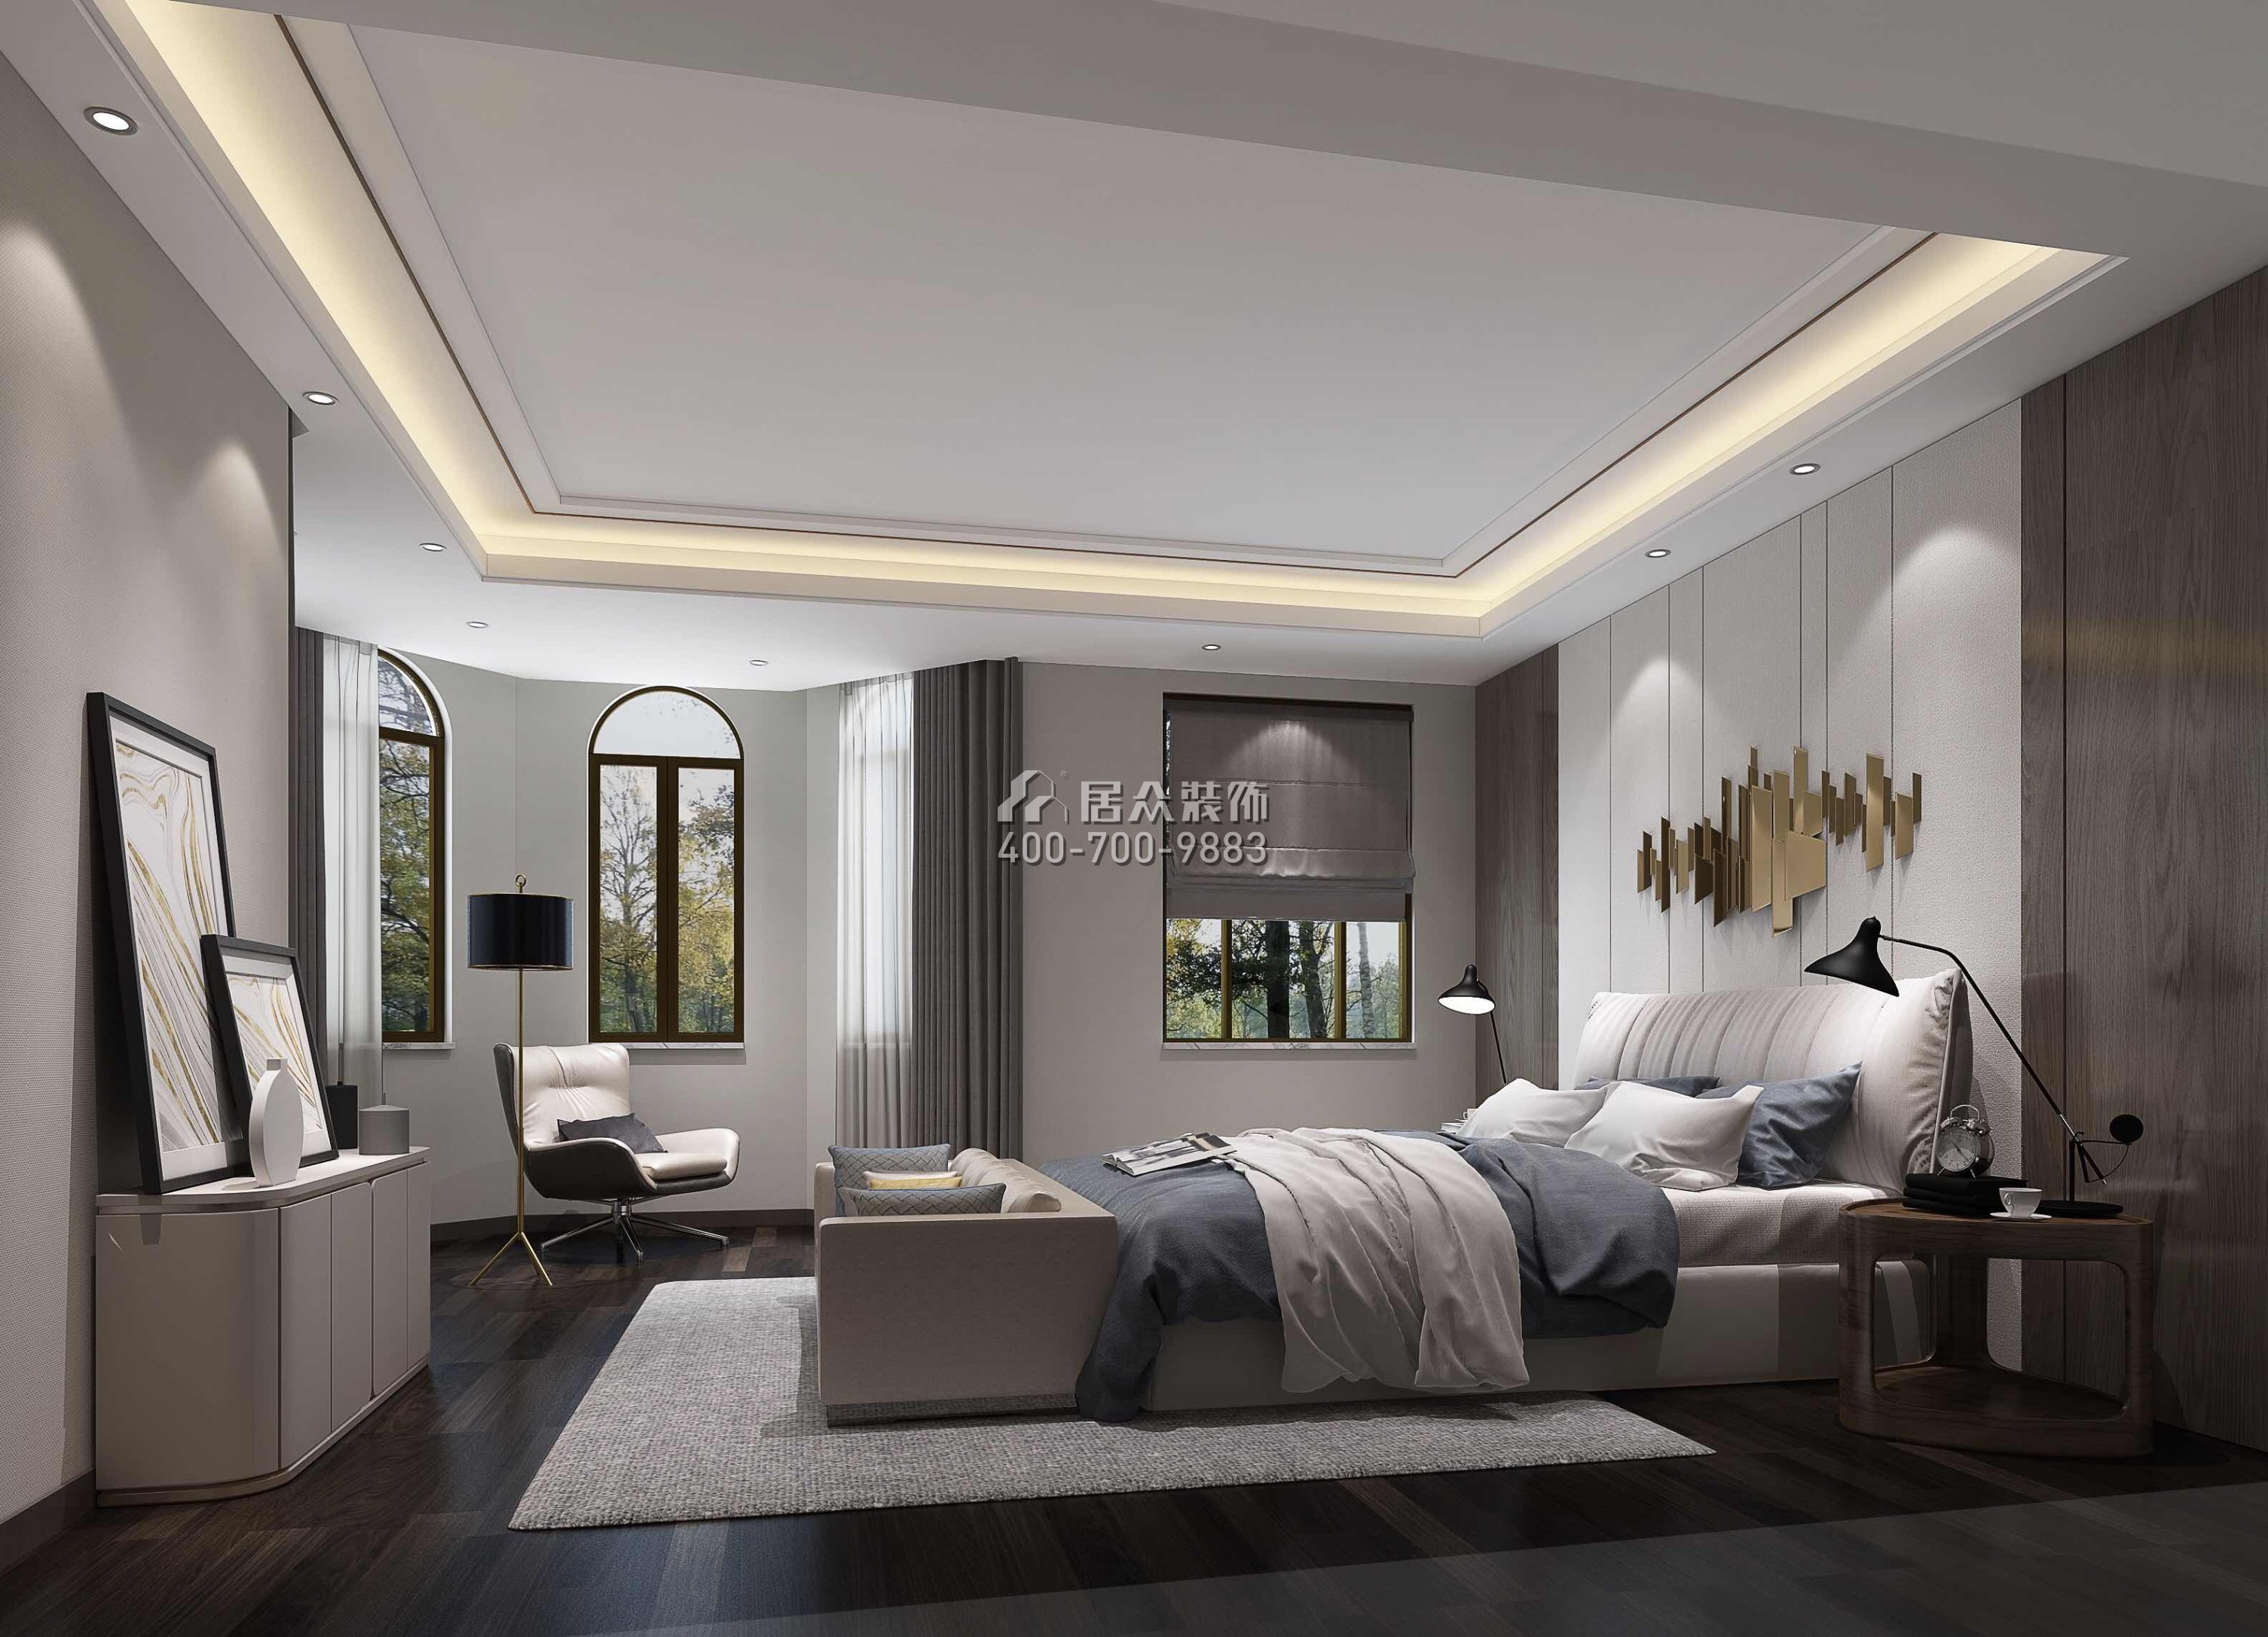 江畔豪庭800平方米現代簡約風格別墅戶型臥室裝修效果圖